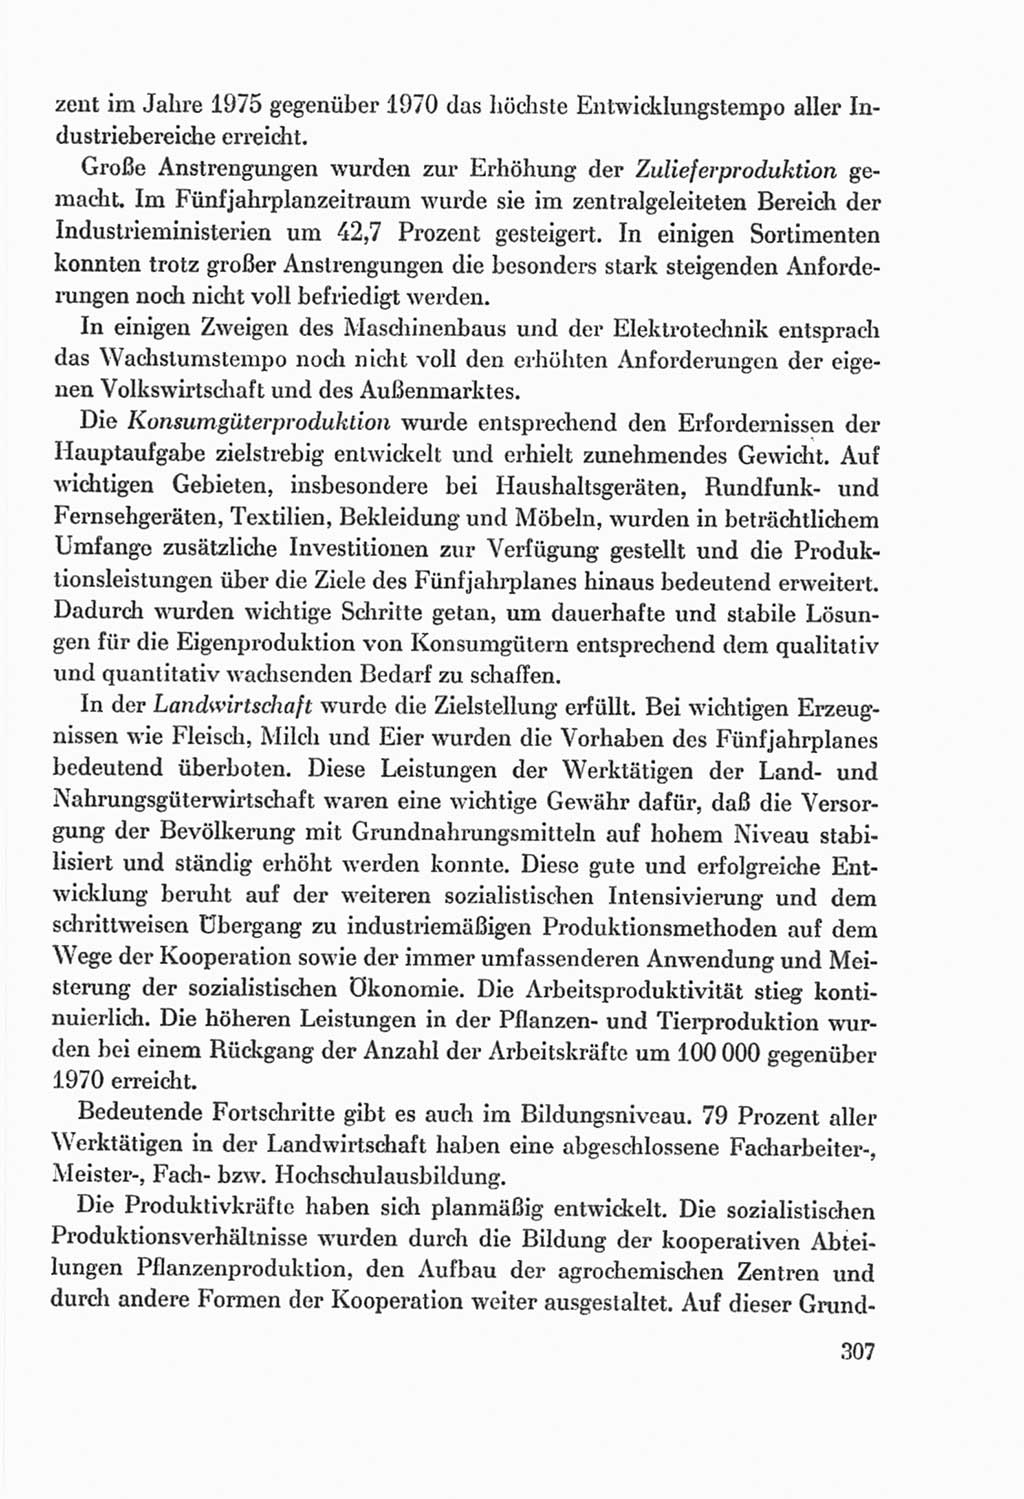 Protokoll der Verhandlungen des Ⅸ. Parteitages der Sozialistischen Einheitspartei Deutschlands (SED) [Deutsche Demokratische Republik (DDR)] 1976, Band 2, Seite 307 (Prot. Verh. Ⅸ. PT SED DDR 1976, Bd. 2, S. 307)